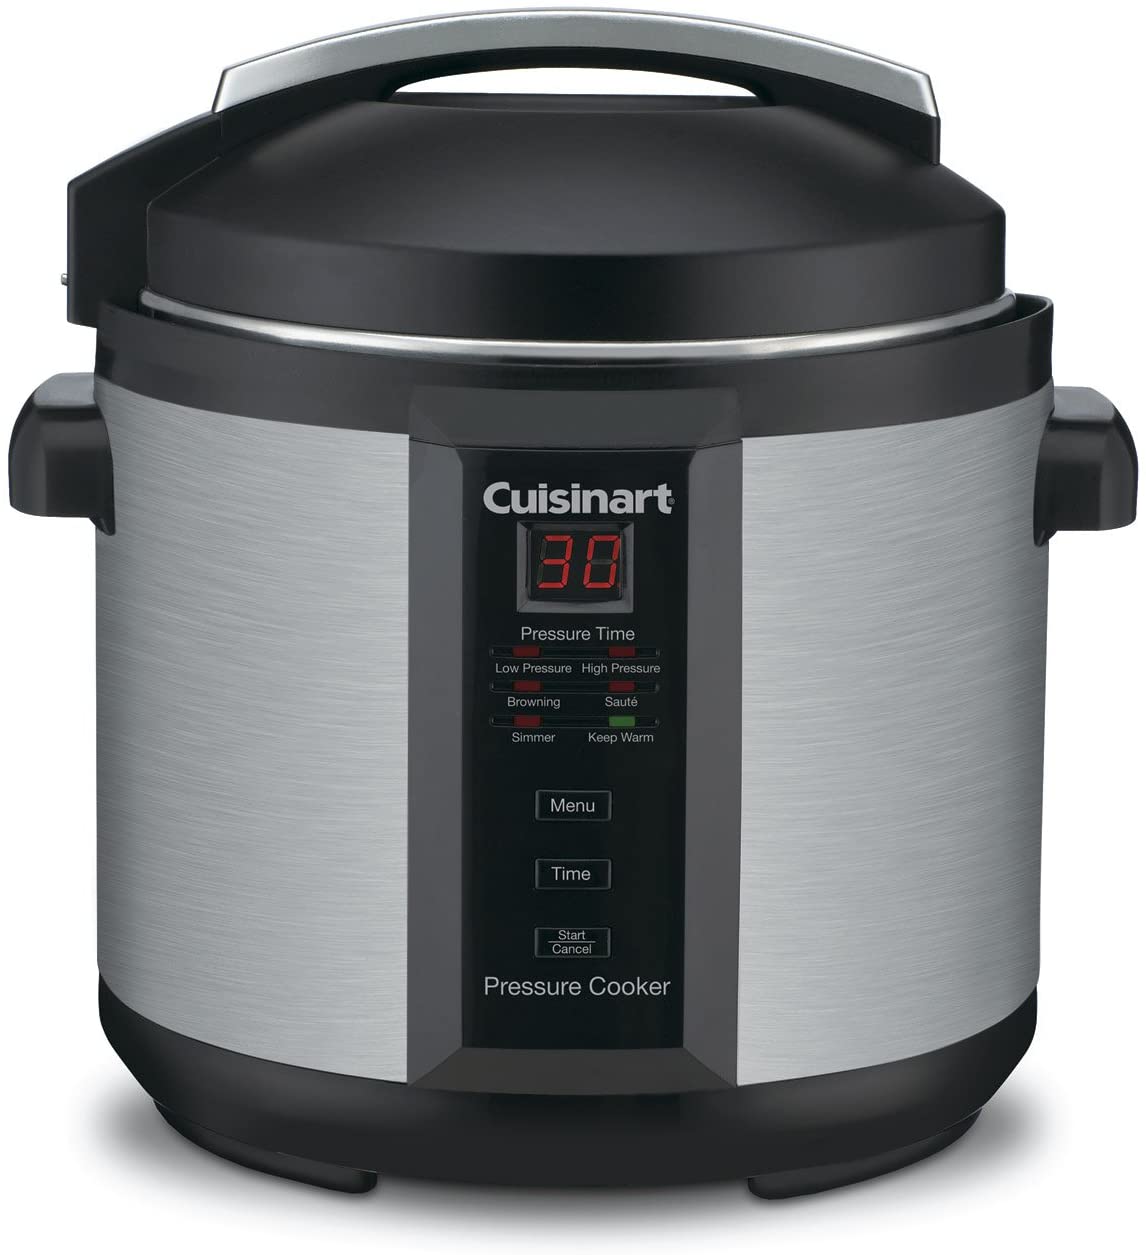 Cuisinart CPC-600 6 Quart 1000 Watt Electric Pressure Cooker